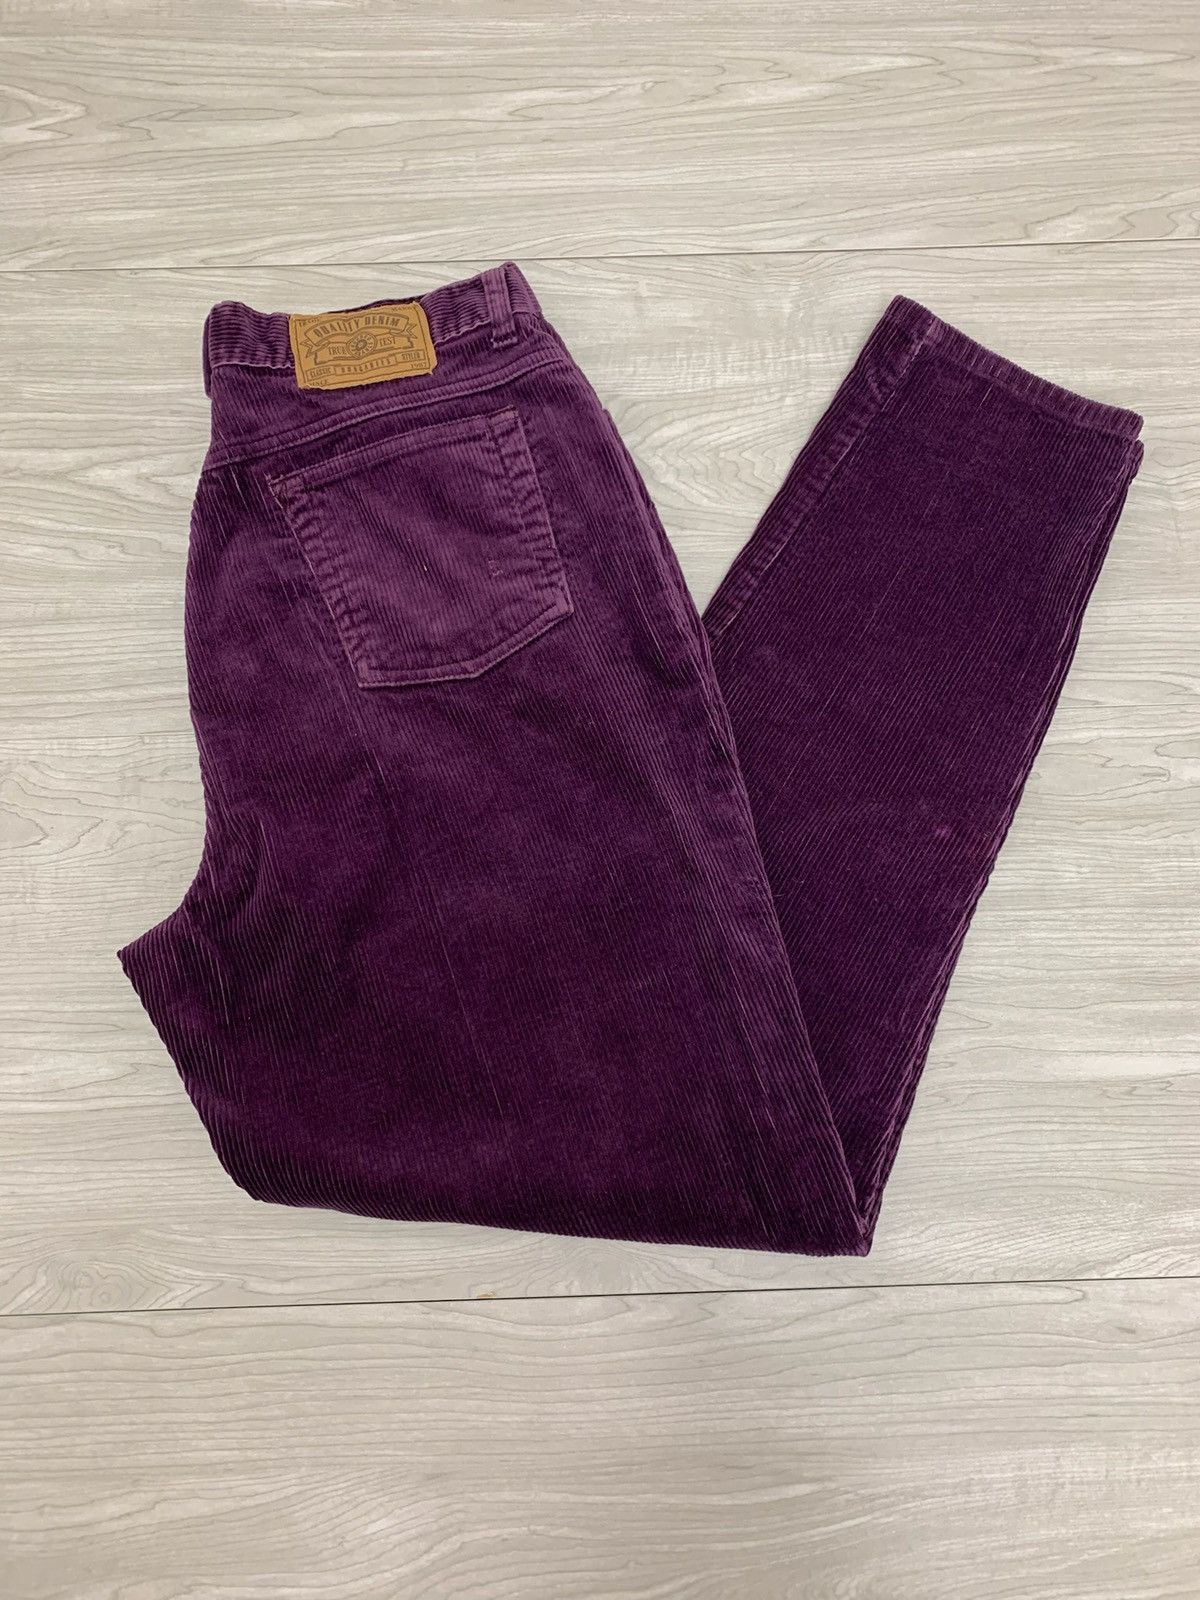 Vintage Vintage Purple Corduroy pants 30x30 Size US 30 / EU 46 - 1 Preview